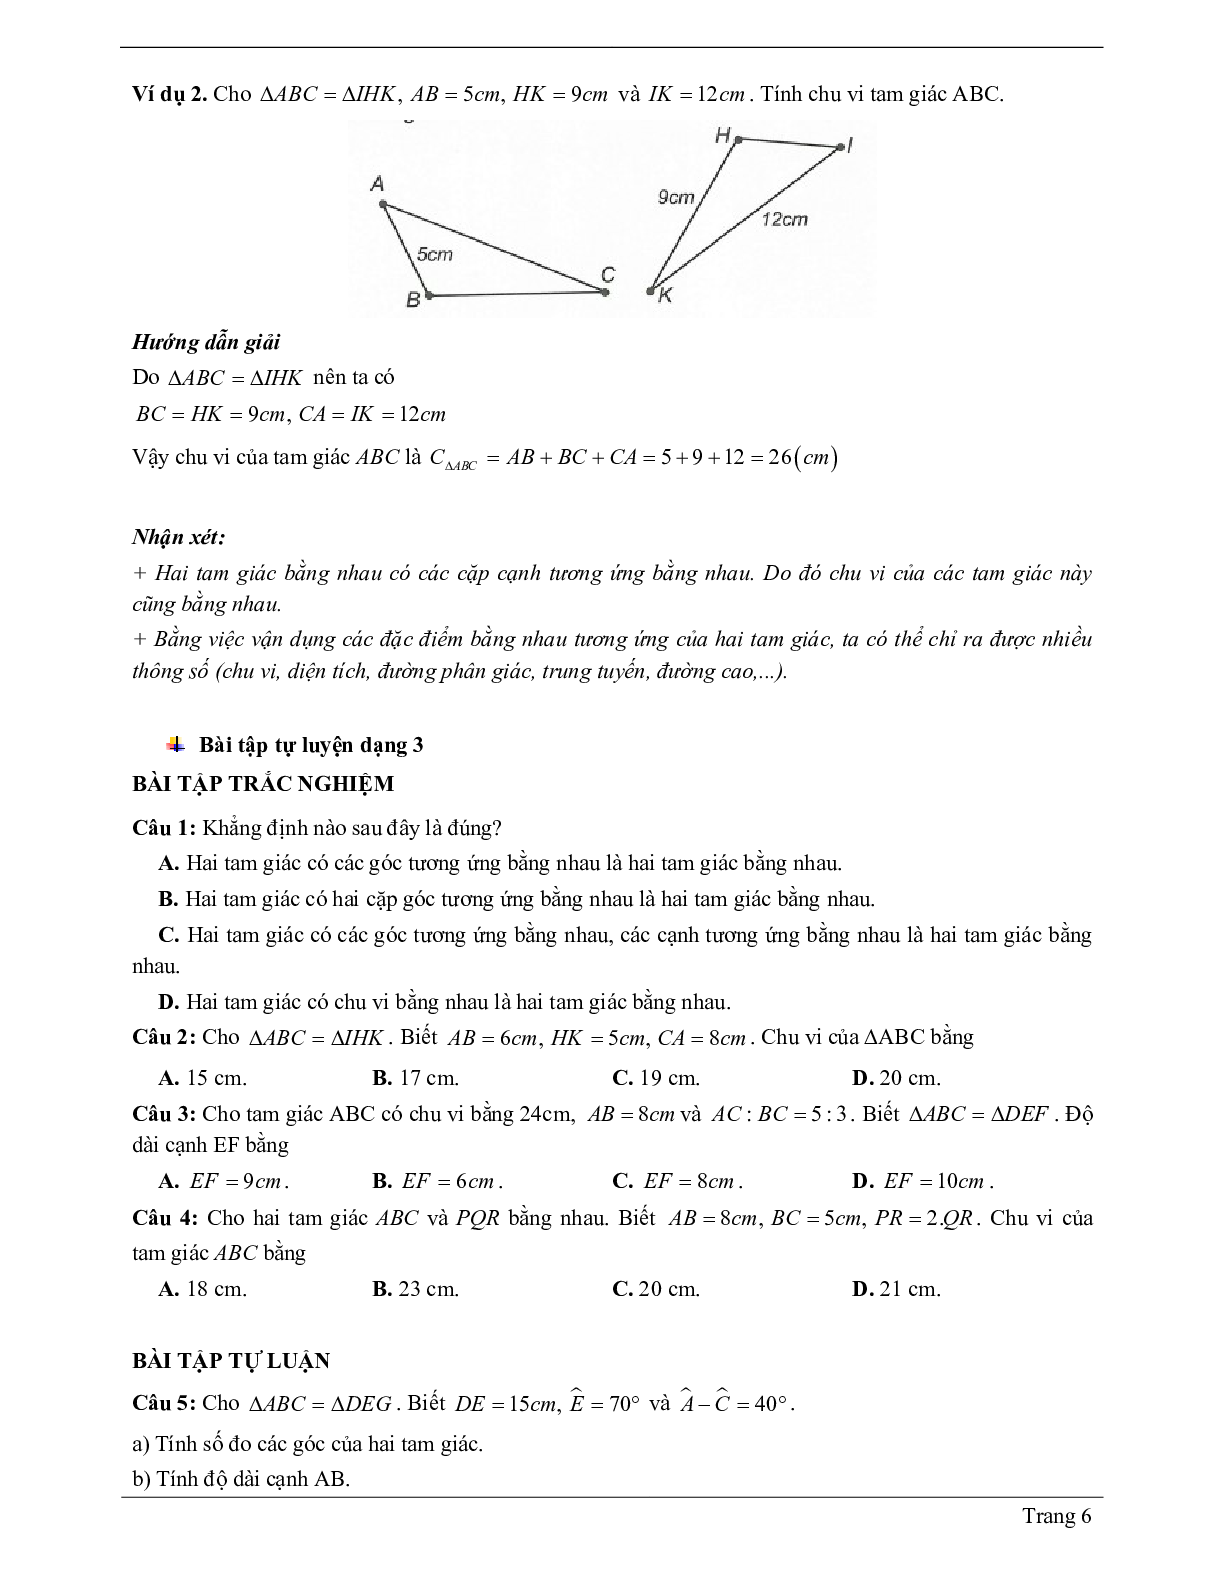 Lý thuyết Toán 7 có đáp án: Hai tam giác bằng nhau (trang 6)